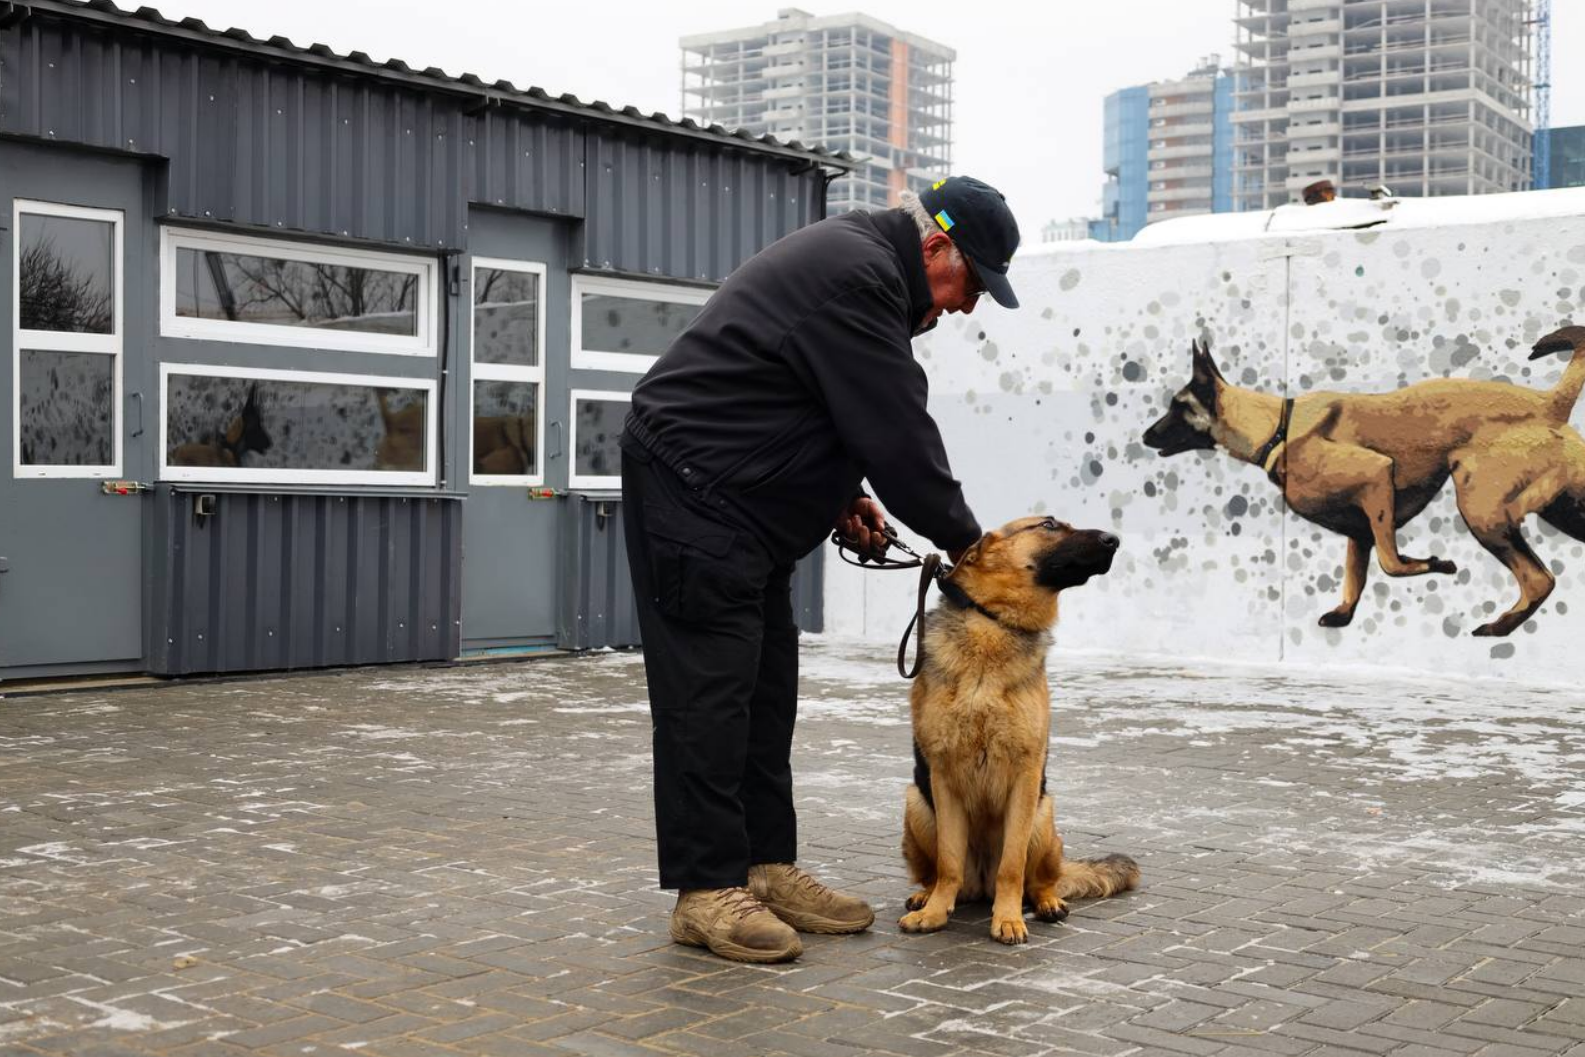 У Києві відкрили кінологічний центр для службових собак "Укрзалізниці": фото